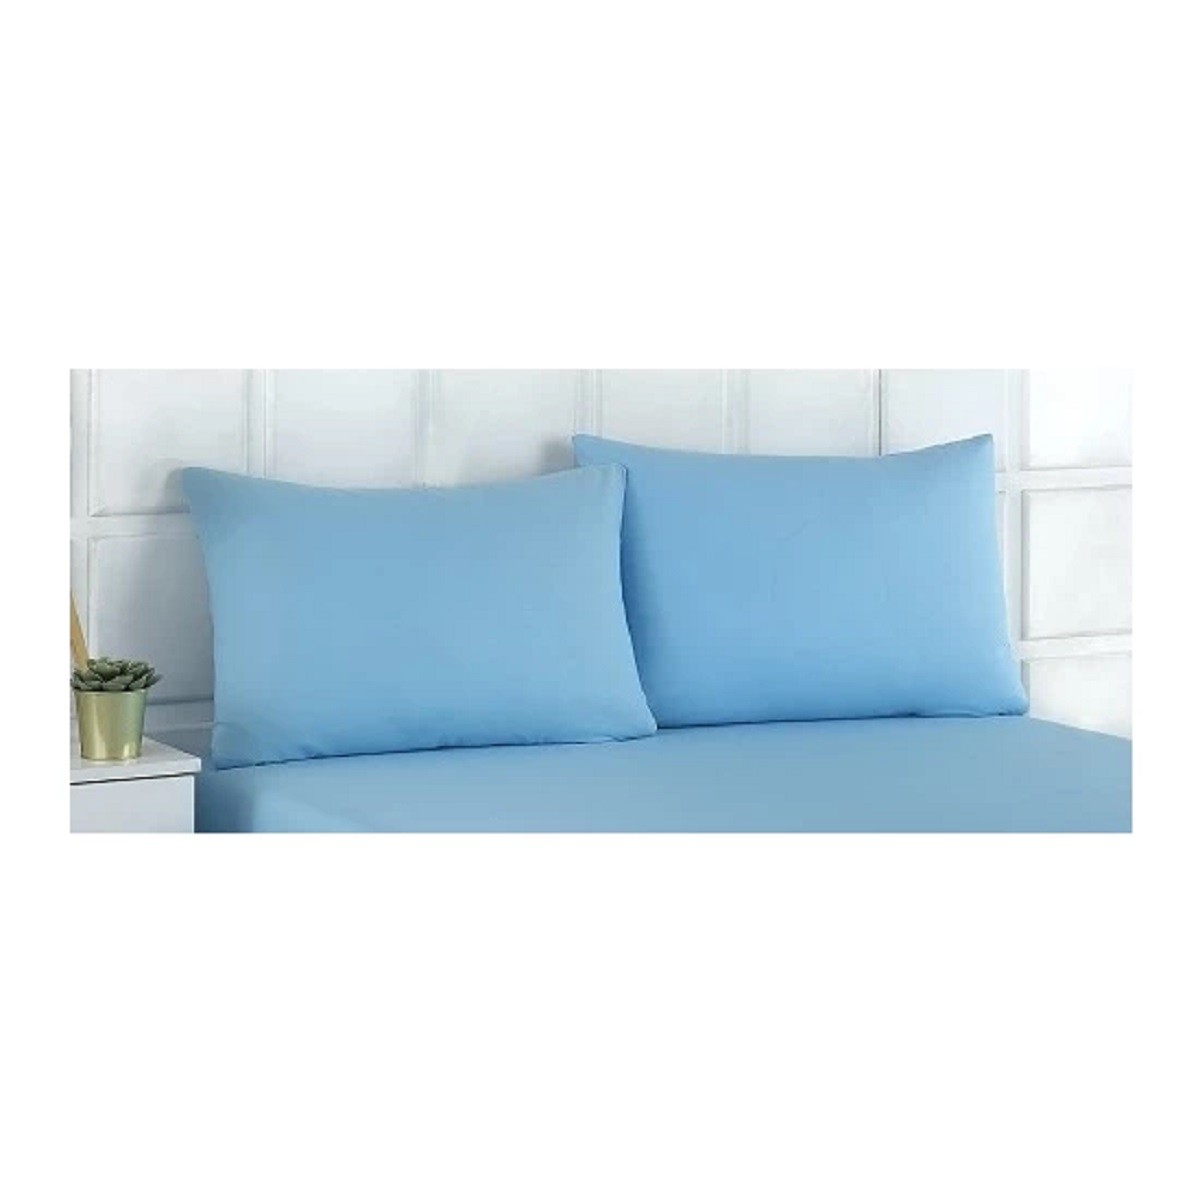 Tinimini Home Pamuklu Fermuarlı 50 x 70 Ebat Yastık Kılıfı | 2 Adet - Mavi